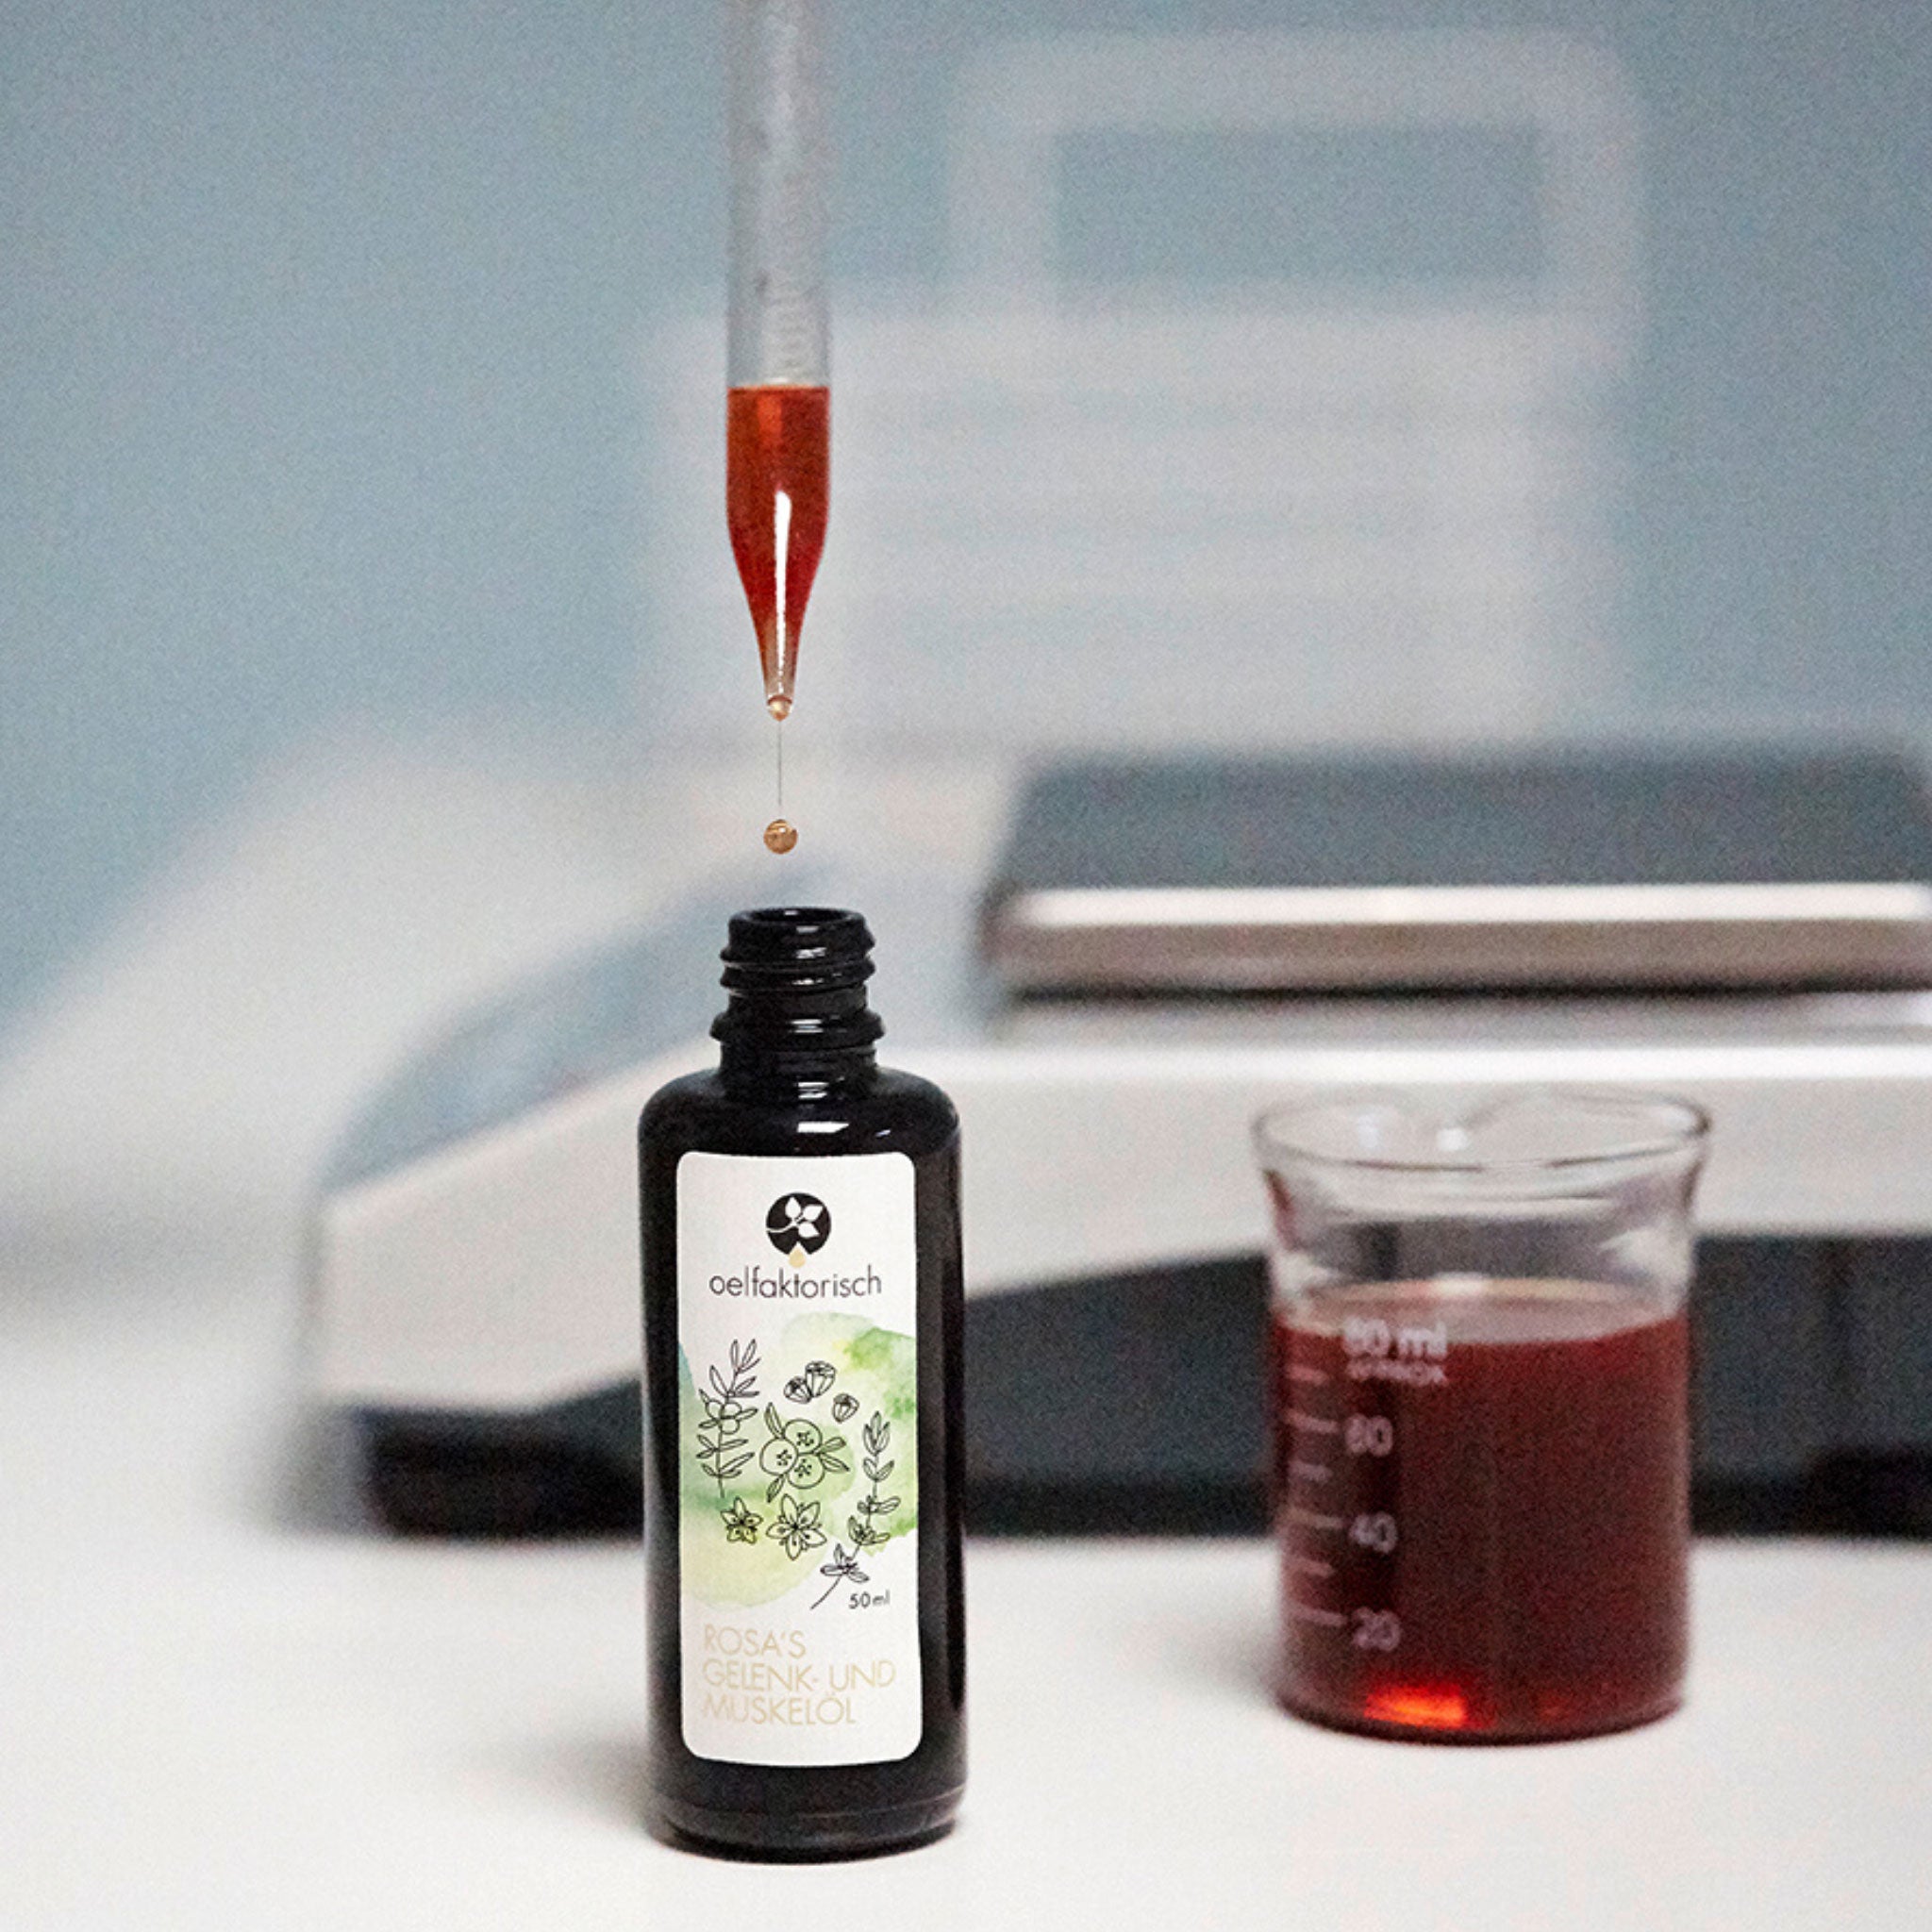 Reine naturbelassene Wirköle und Zusatzstoffe kommen im eigenen Labor in die Violettglasflasche | oelfaktorisch Körperöle